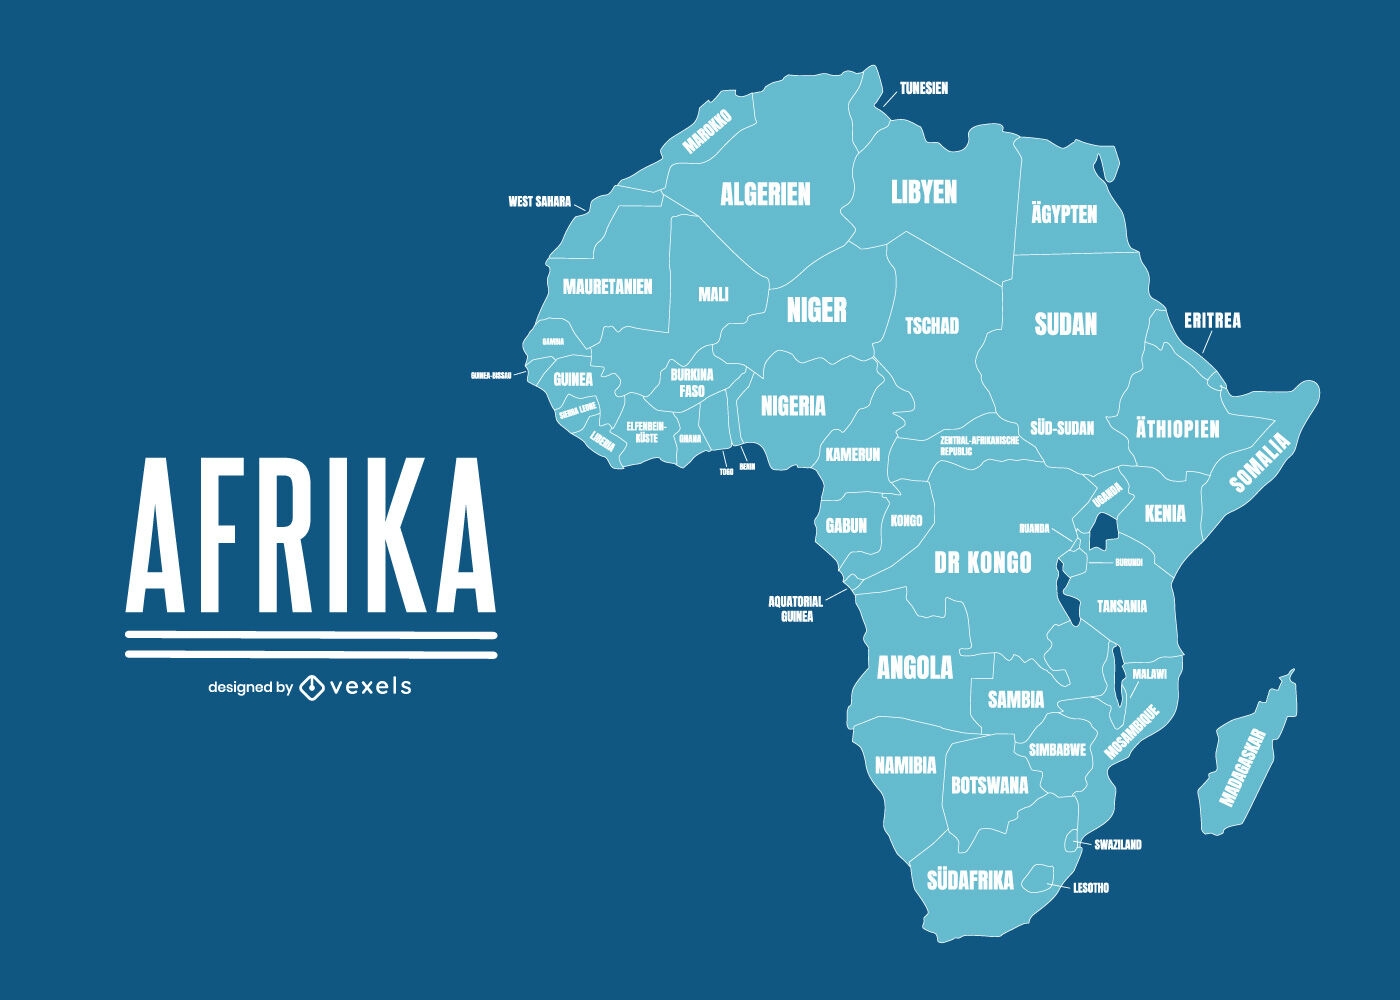 Mapa geográfico da África com nomes de países